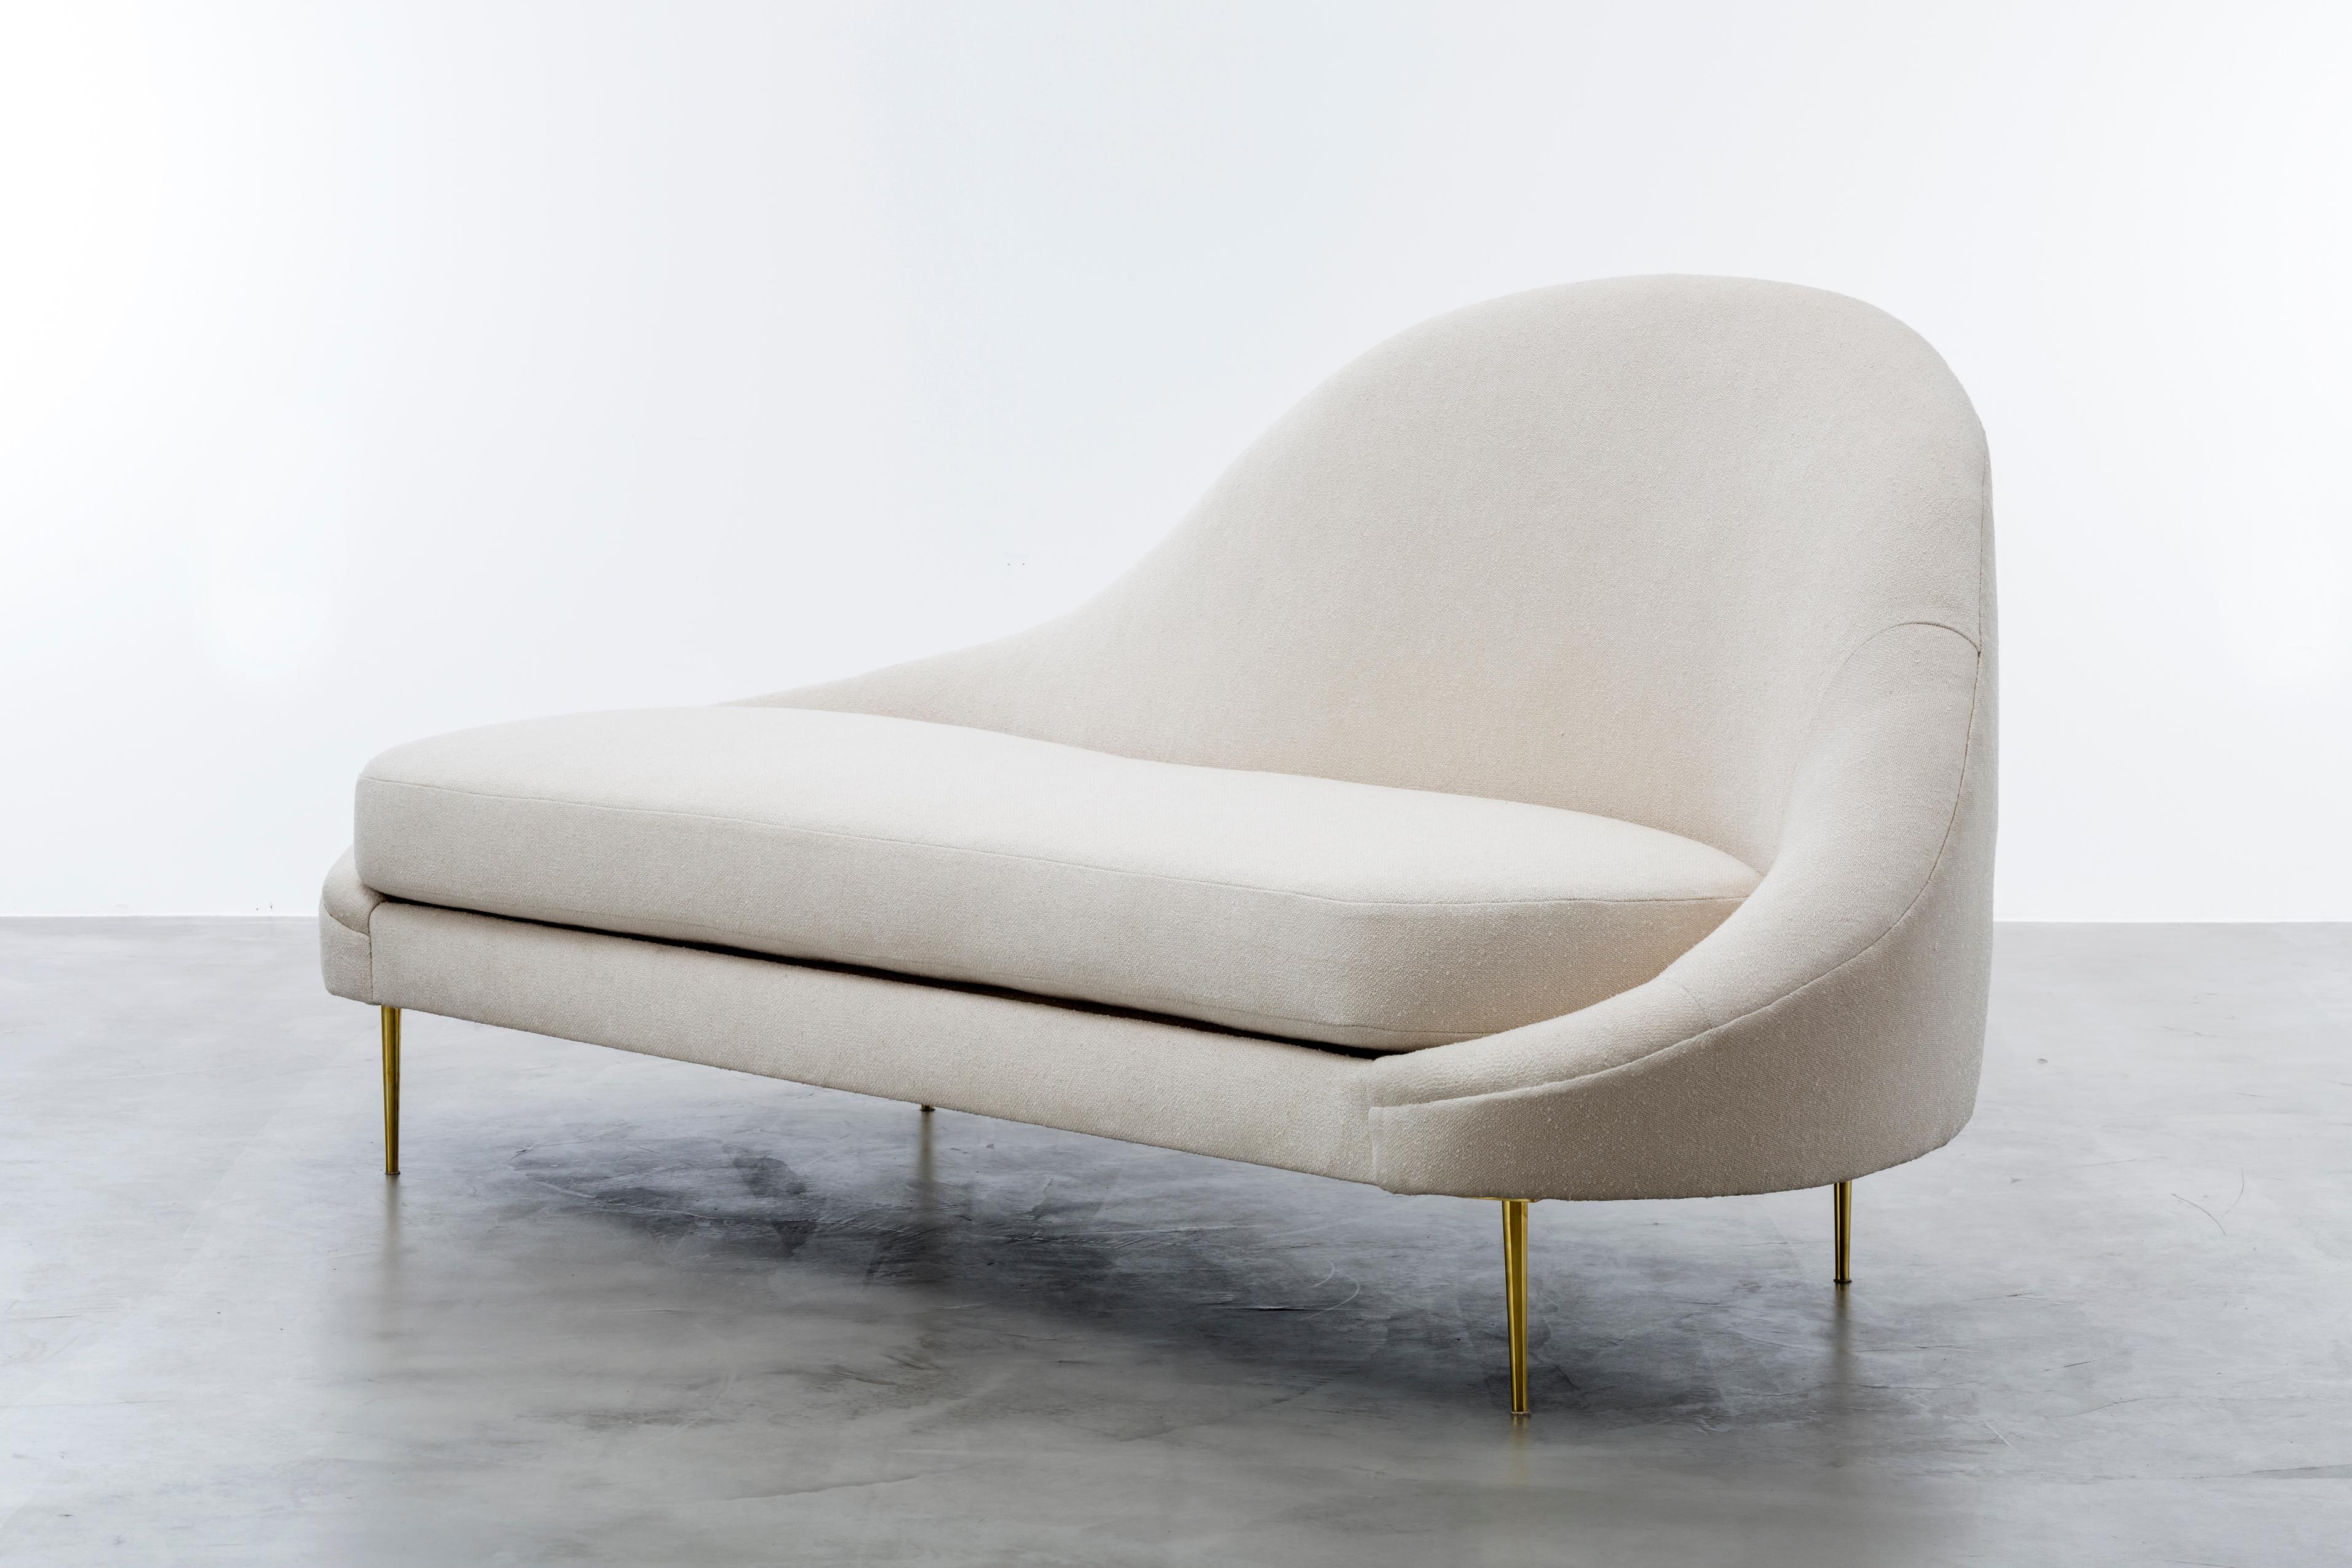 CHAISE SANDRIINE - Chaise moderne à pente asymétrique COM

La chaise Sandrine est un meuble étonnant inspiré par les lignes courbes de l'architecture de Gaudi. Son design en pente asymétrique, associé à des pieds en laiton massif, crée une